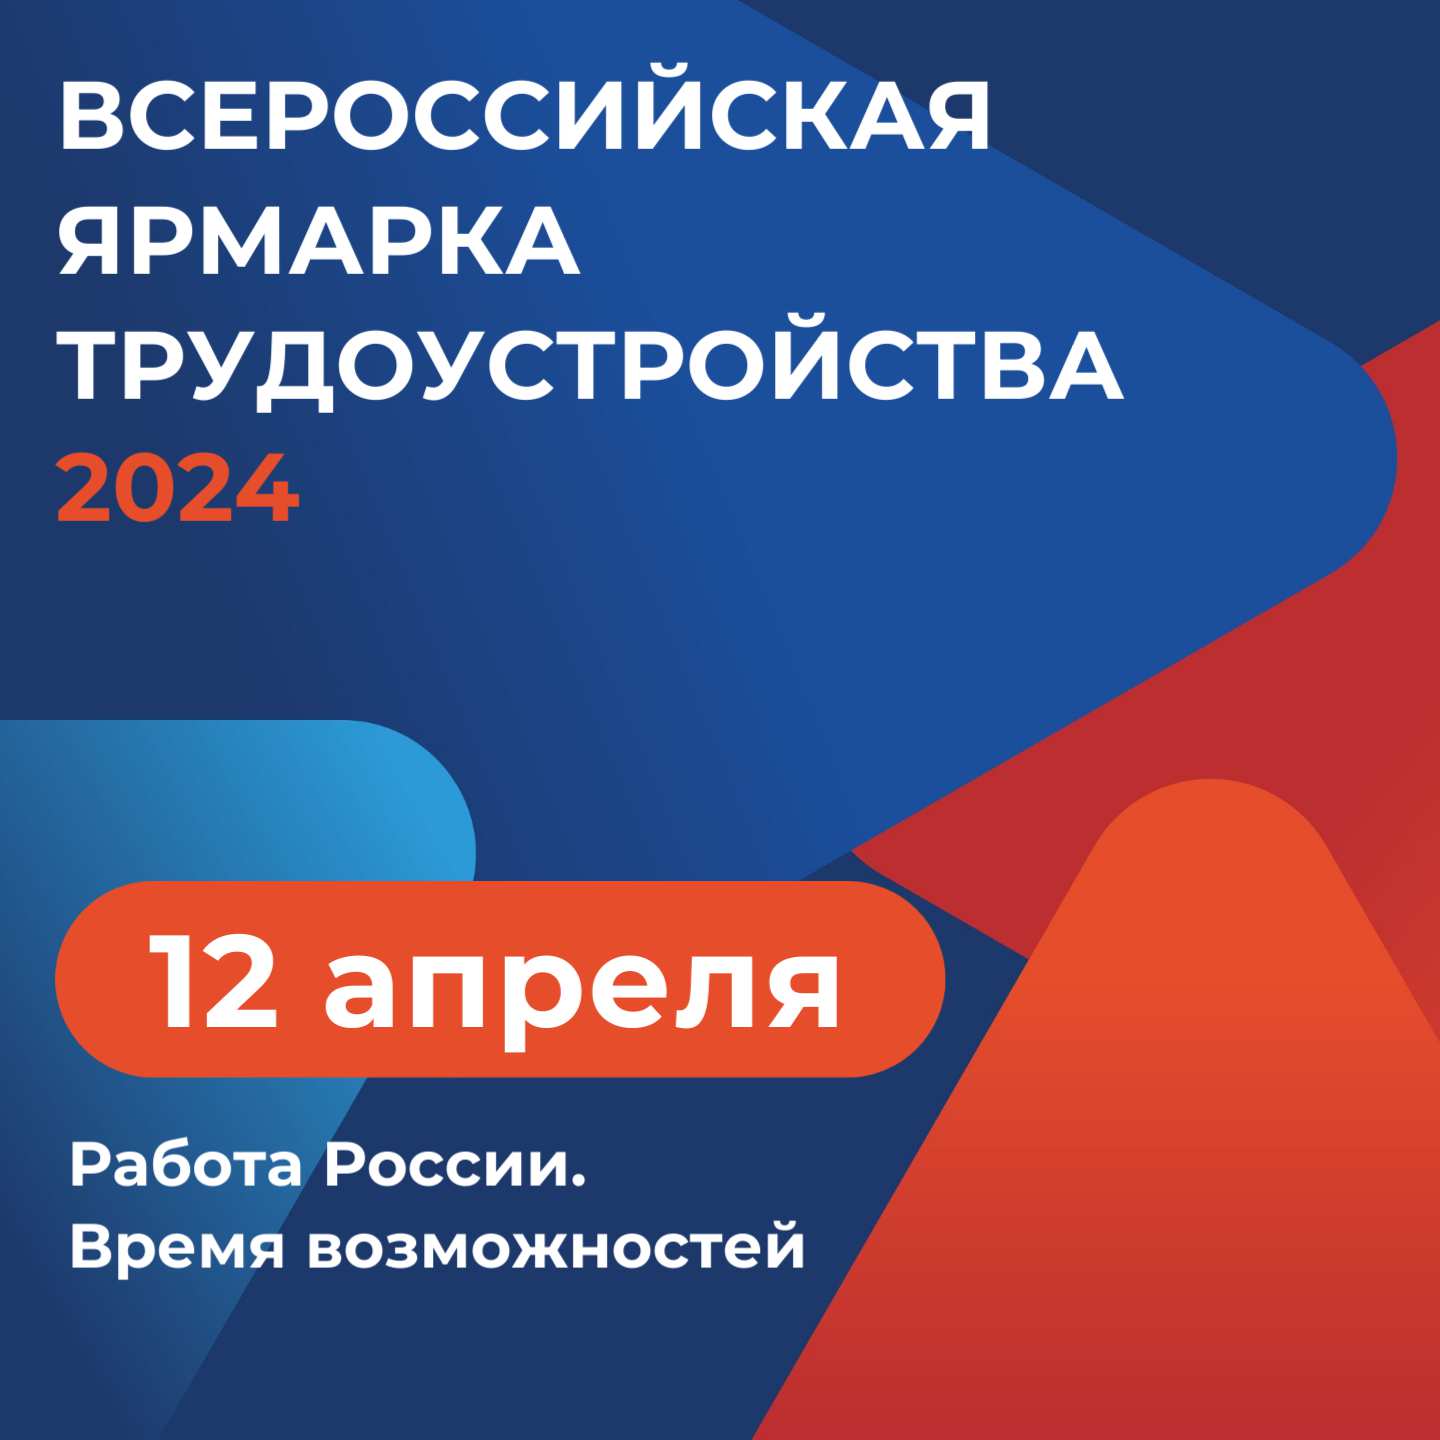 12 апреля стартует первый этап всероссийской ярмарки трудоустройства «Работа России. Время возможностей»